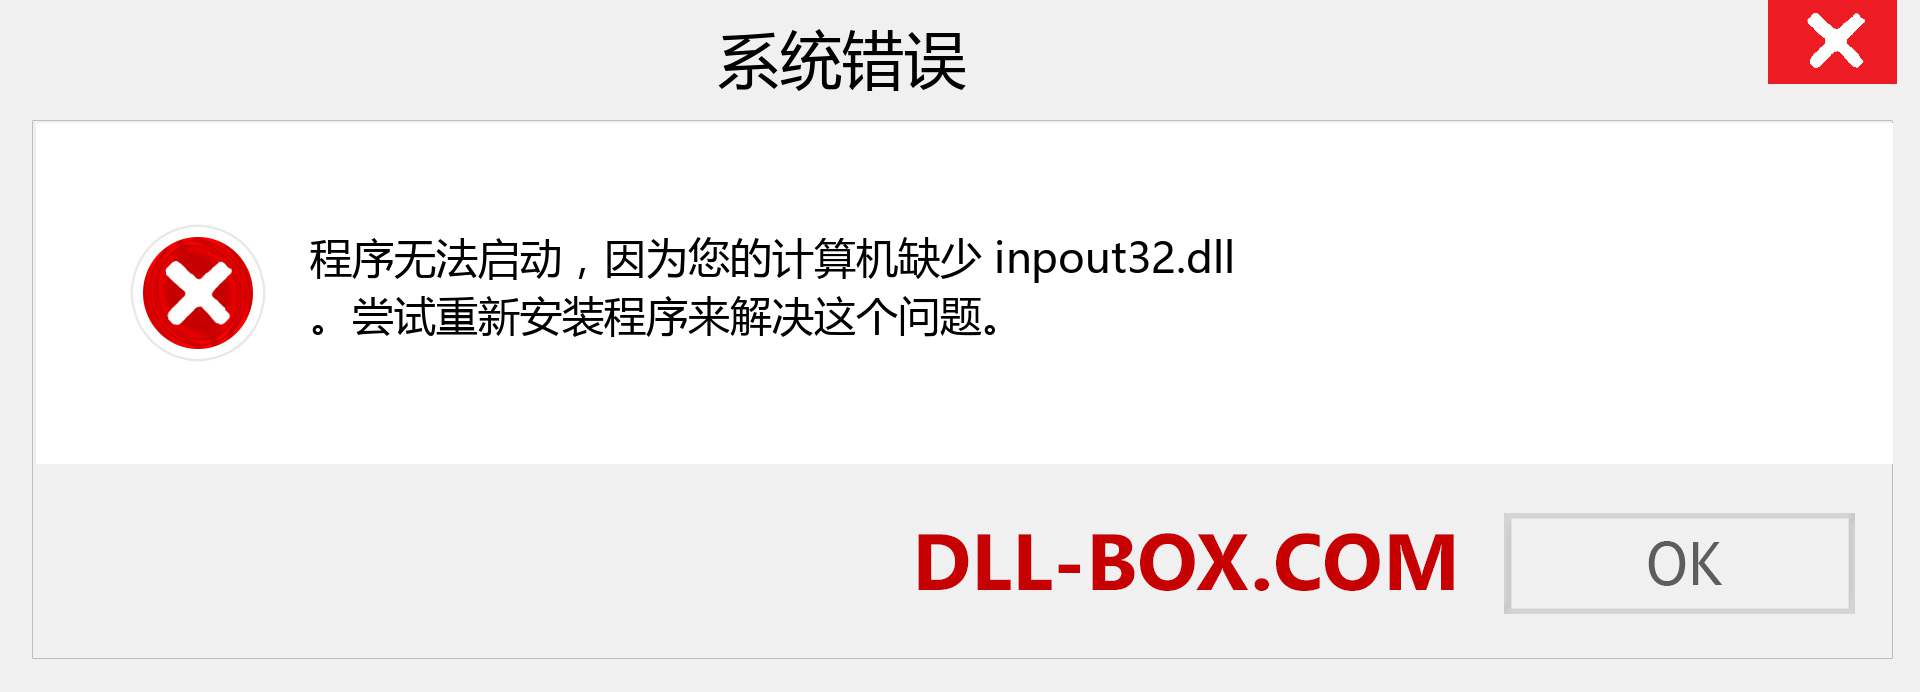 inpout32.dll 文件丢失？。 适用于 Windows 7、8、10 的下载 - 修复 Windows、照片、图像上的 inpout32 dll 丢失错误